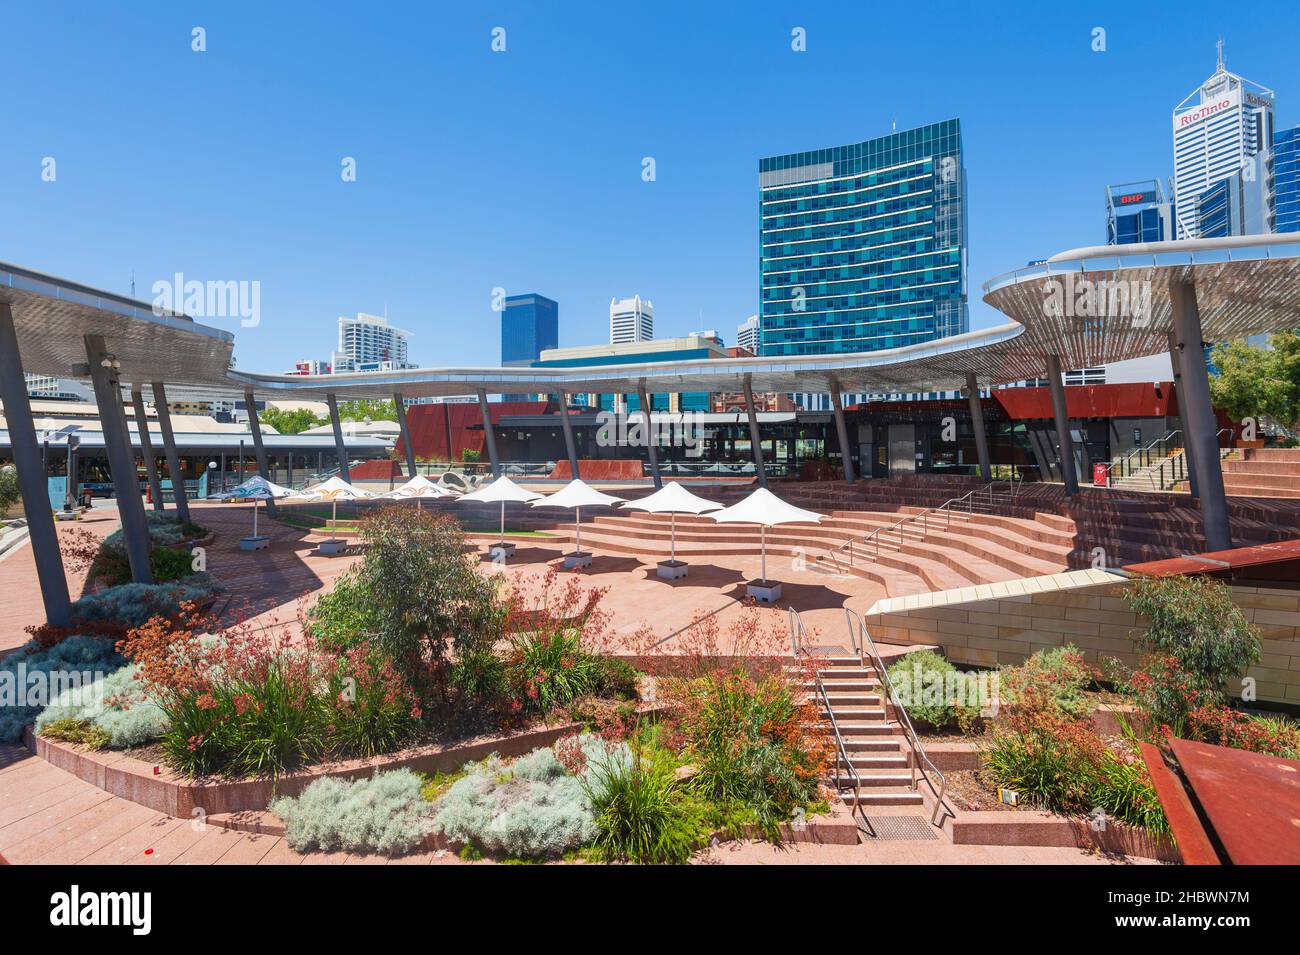 Vue sur Yagan Square, une destination touristique populaire dans le quartier central des affaires de Perth, Australie occidentale, Australie occidentale, Australie Banque D'Images